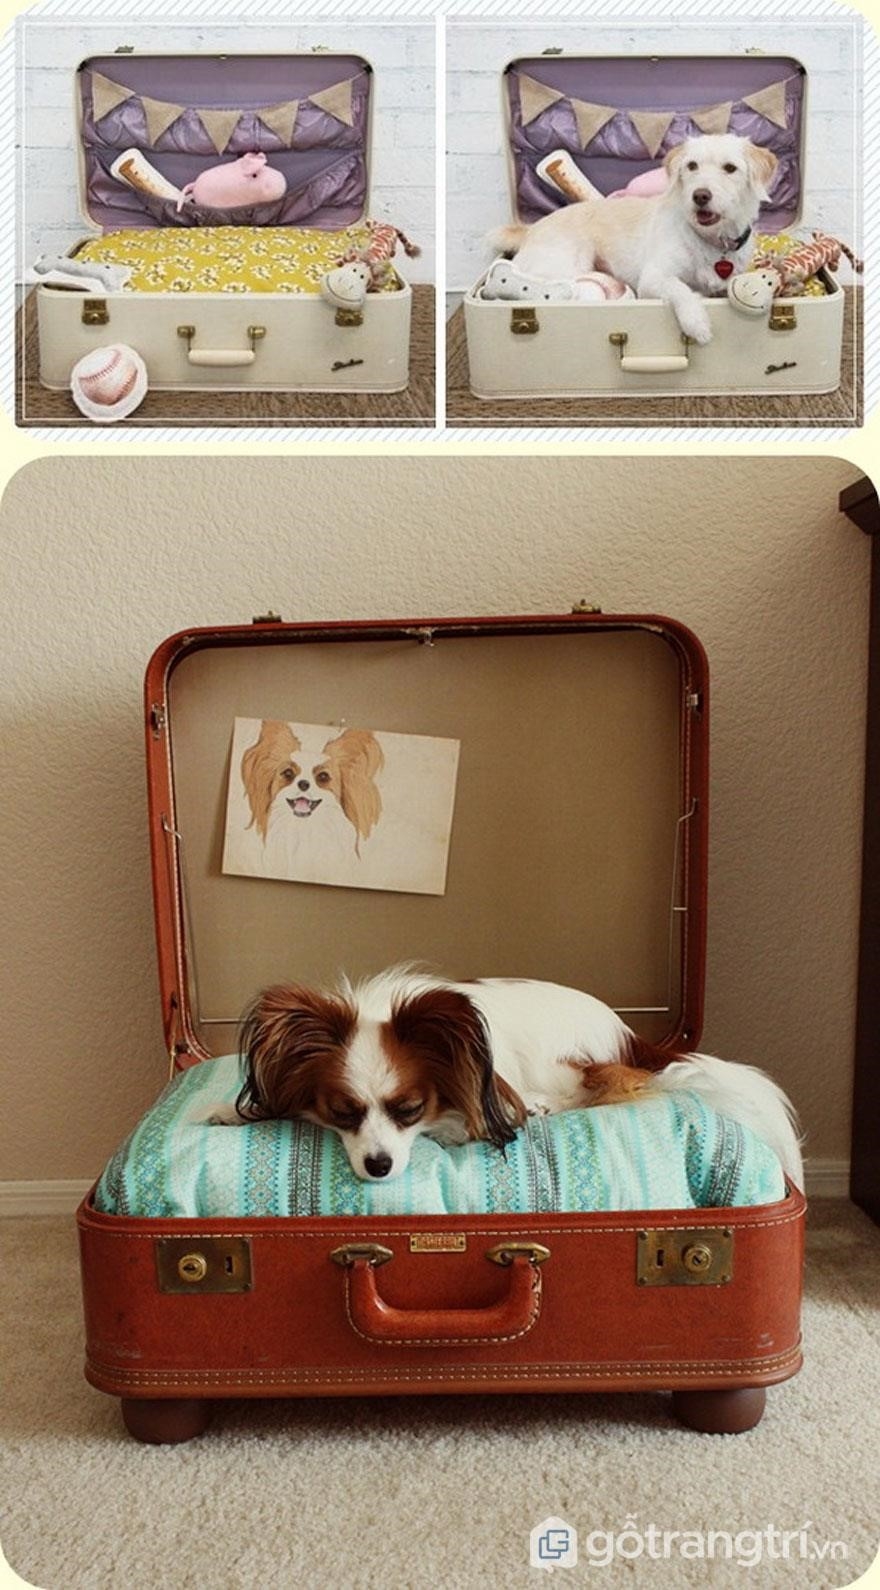 Một ý tưởng thú vị để tái chế vali là biến nó thành một chiếc giường cho thú cưng của bạn. Điều này không chỉ giúp bạn tiết kiệm tiền mà còn giúp giảm thiểu lượng rác thải được tạo ra. Chỉ cần tháo bỏ phần đệm và sử dụng vật liệu lót mới, bạn có thể tạo ra một chiếc giường êm ái và thoải mái cho cún yêu của mình.